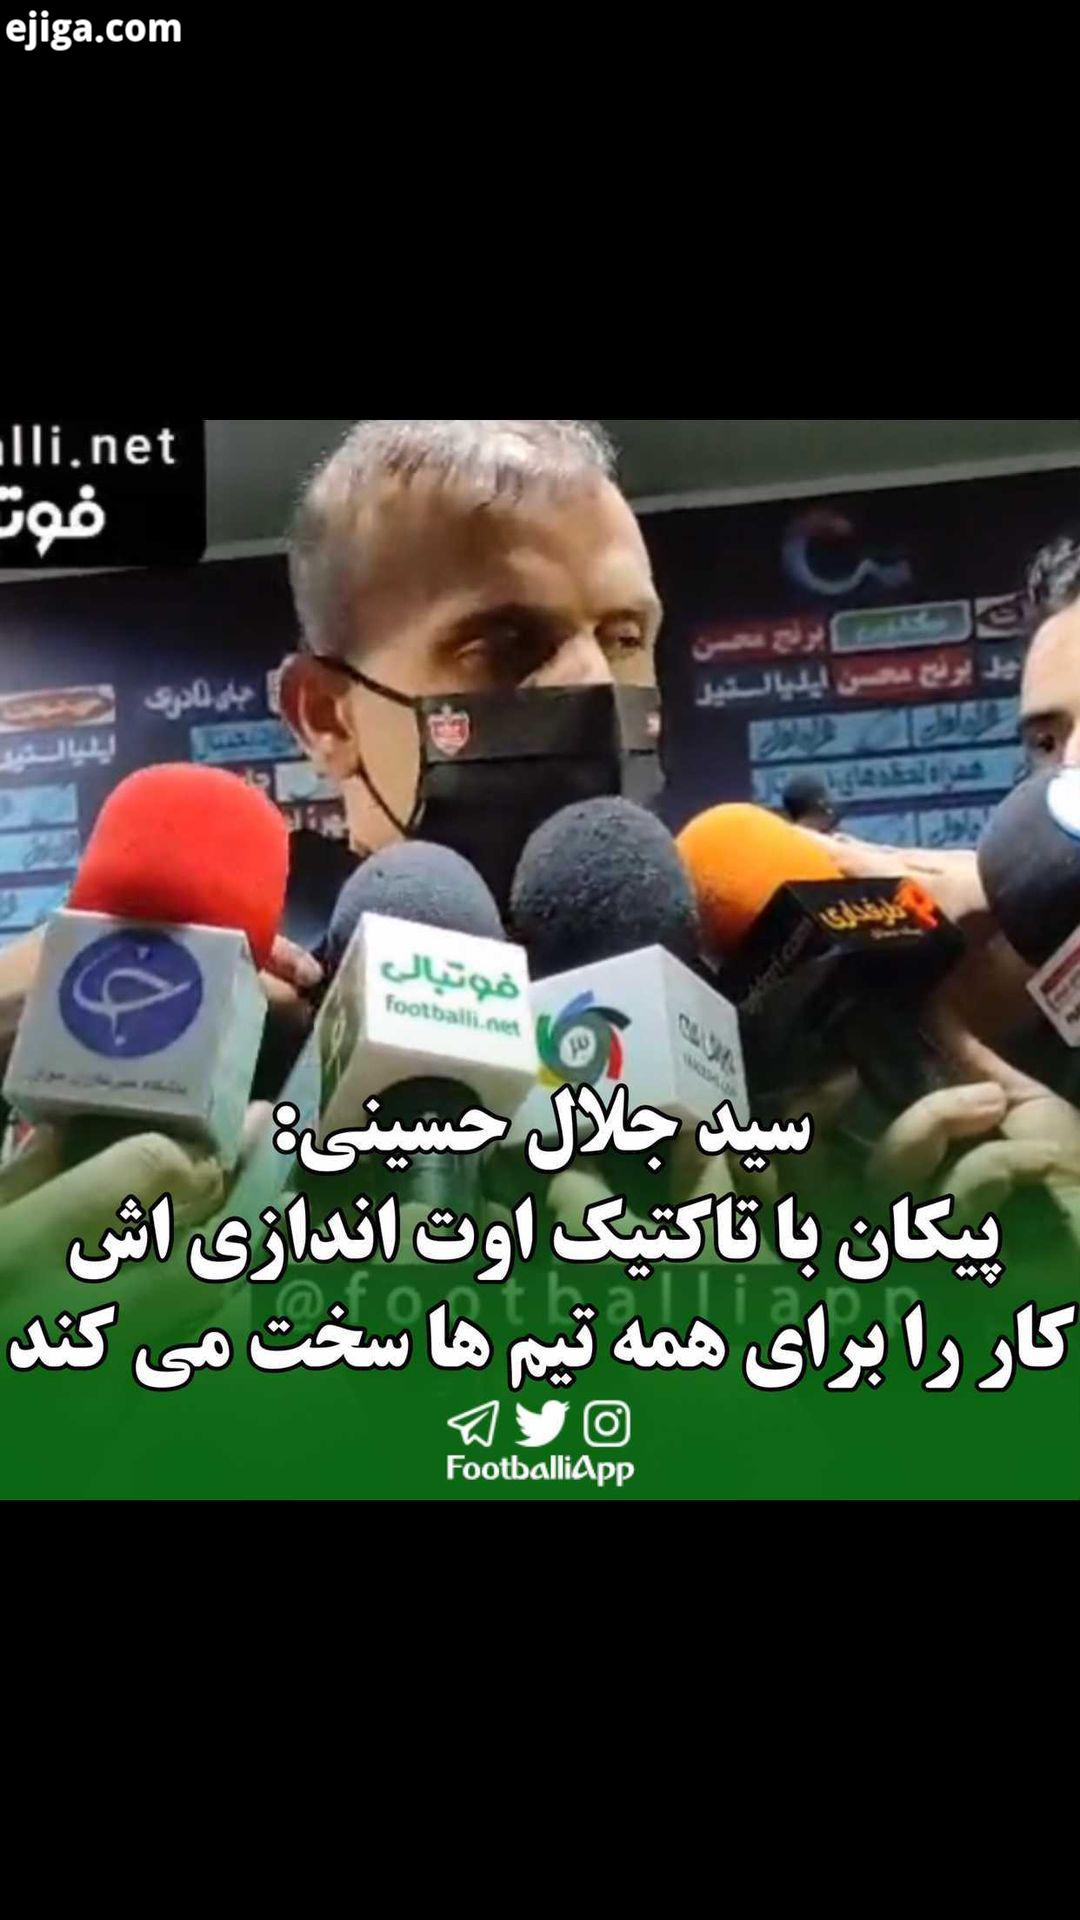 صحبت های سید جلال حسینی کاپیتان پرسپولیس پس از پایان بازی پرسپولیس پیکان: بازی سختی بود پیکان با تاک